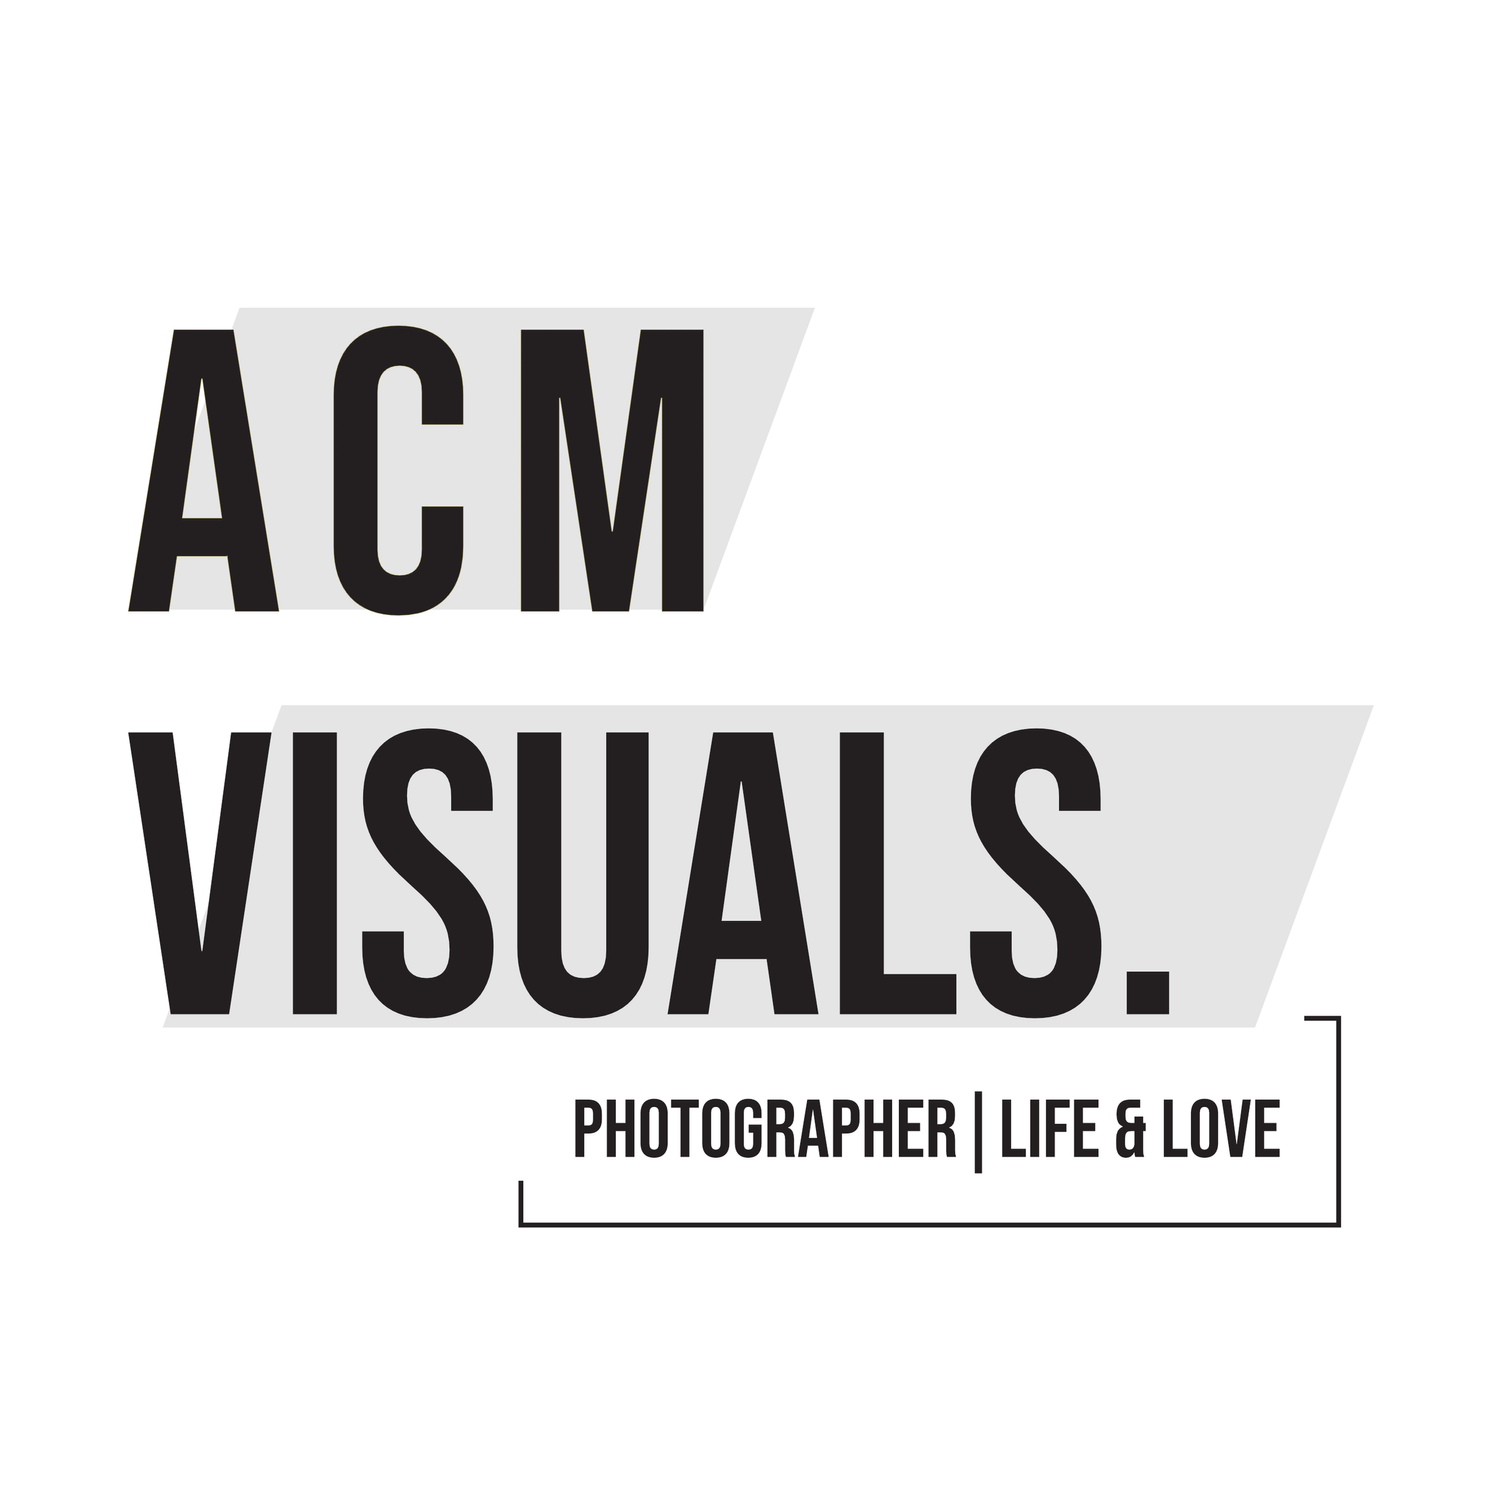 ACM Visuals